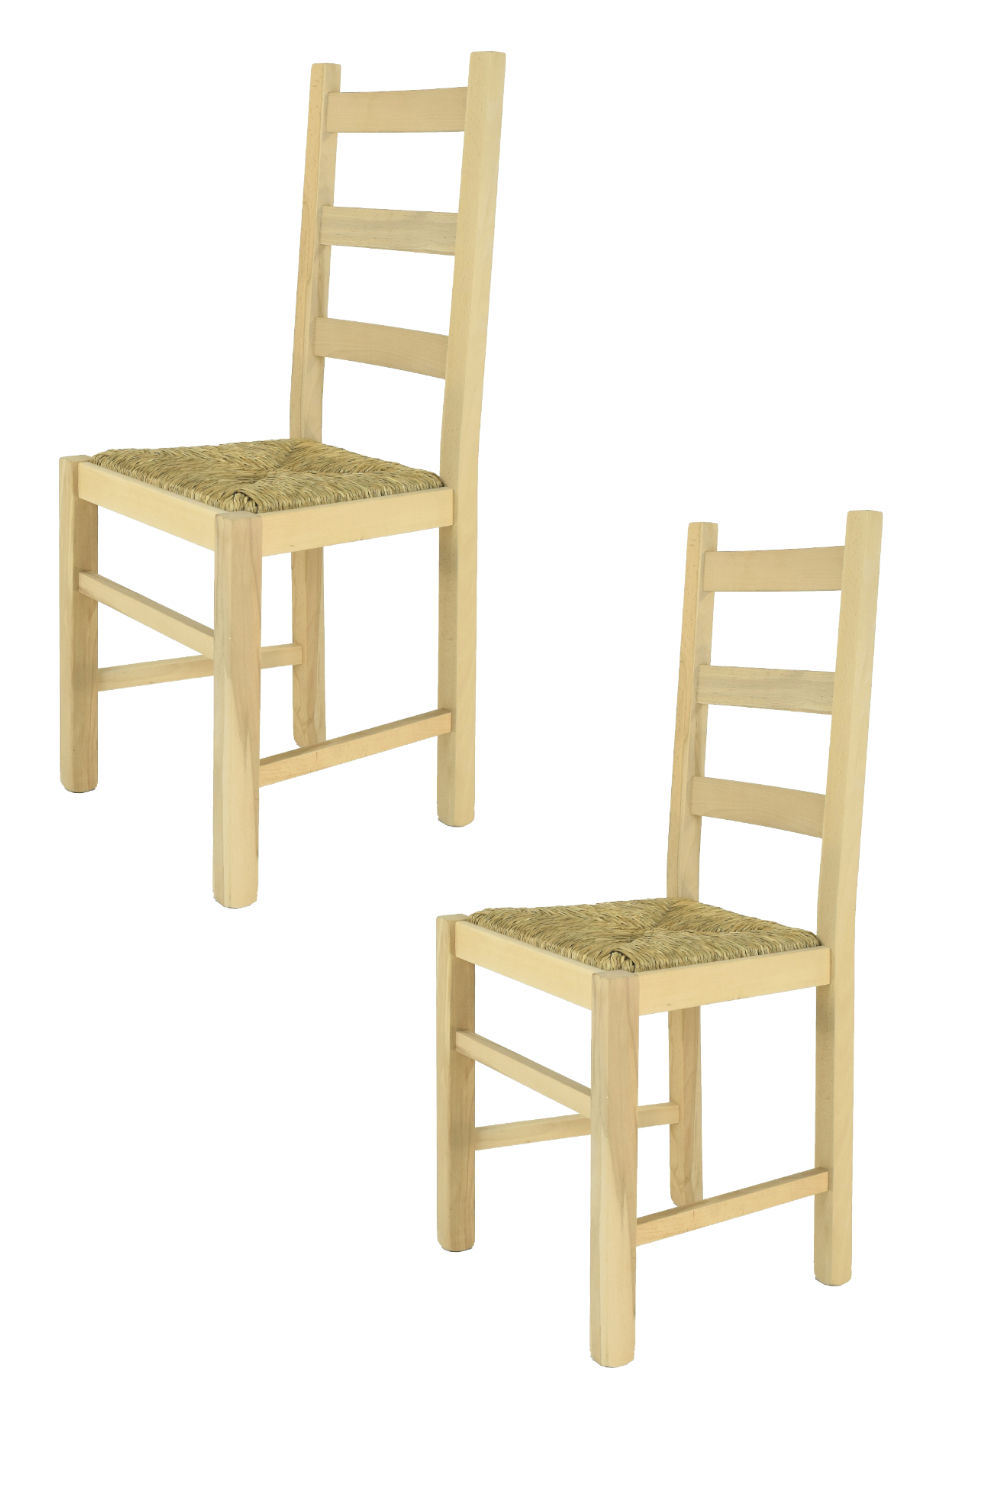 Tommychairs – Set 2 sillas Rustica para cocina y comedor, estructura en madera de haya lijada, no tratada, 100% natural y asiento en paja